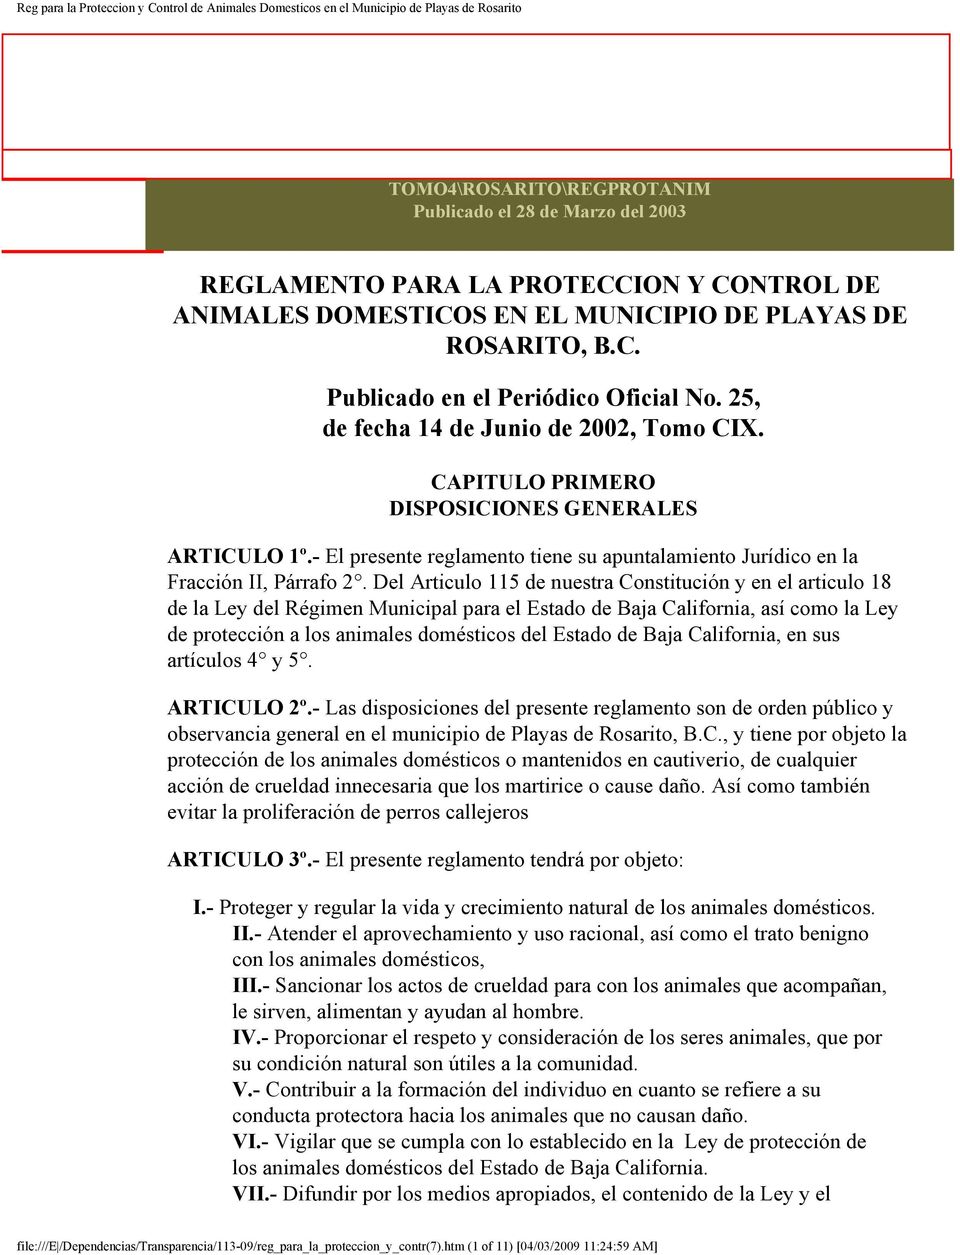 Del Articulo 115 de nuestra Constitución y en el articulo 18 de la Ley del Régimen Municipal para el Estado de Baja California, así como la Ley de protección a los animales domésticos del Estado de